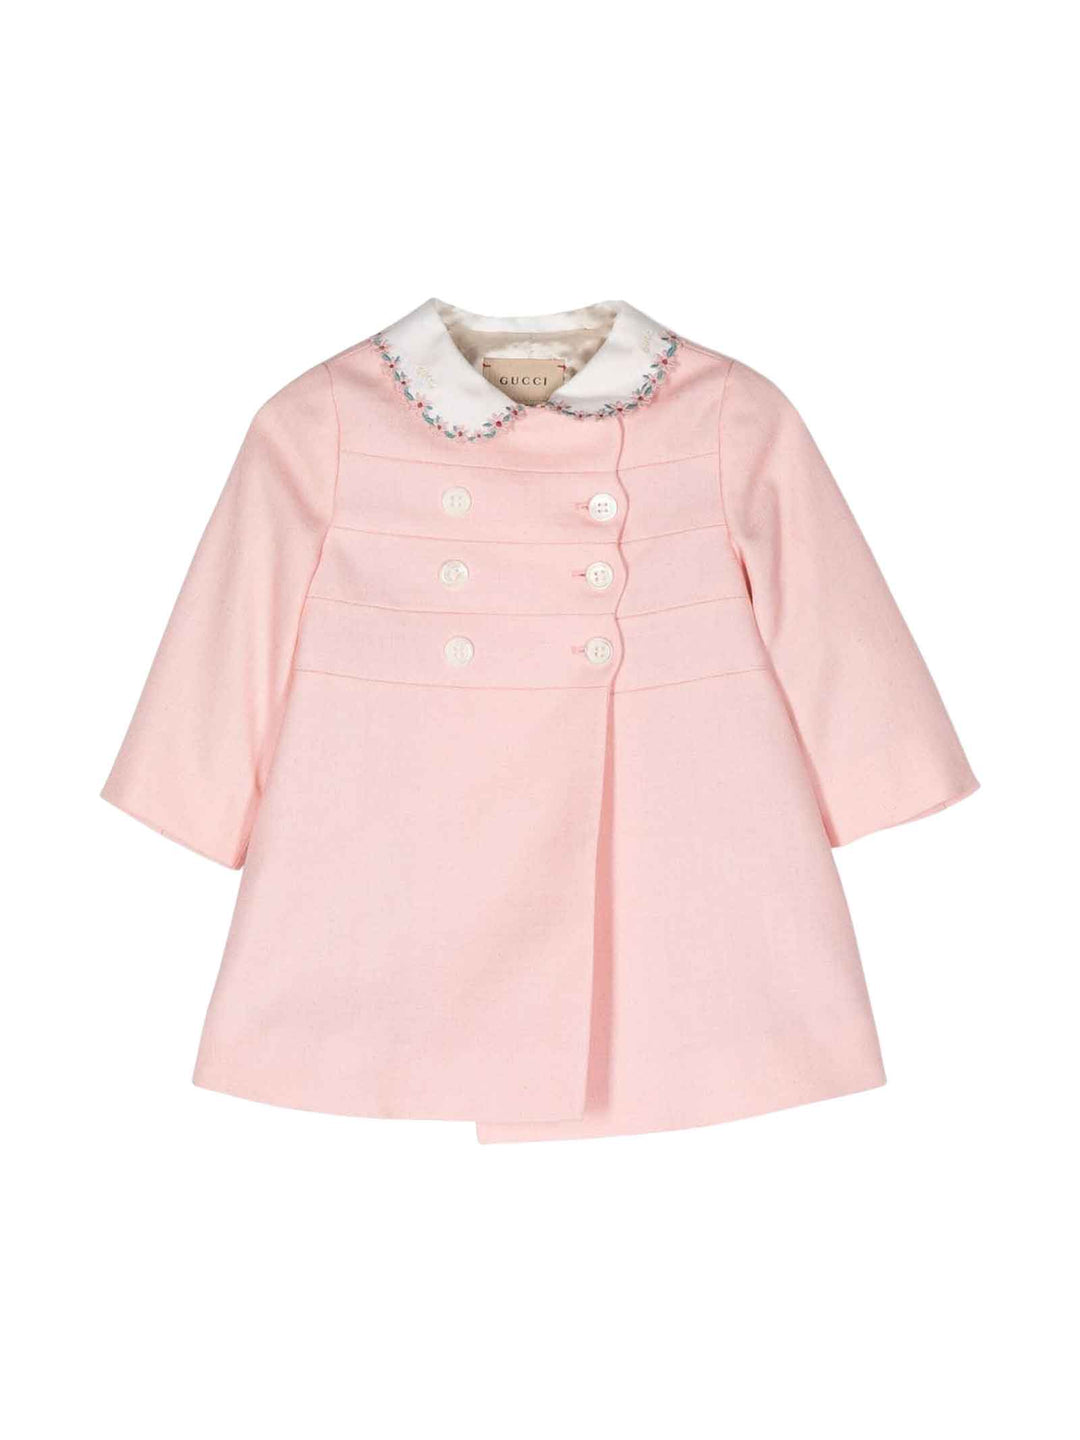 Manteau rose bébé